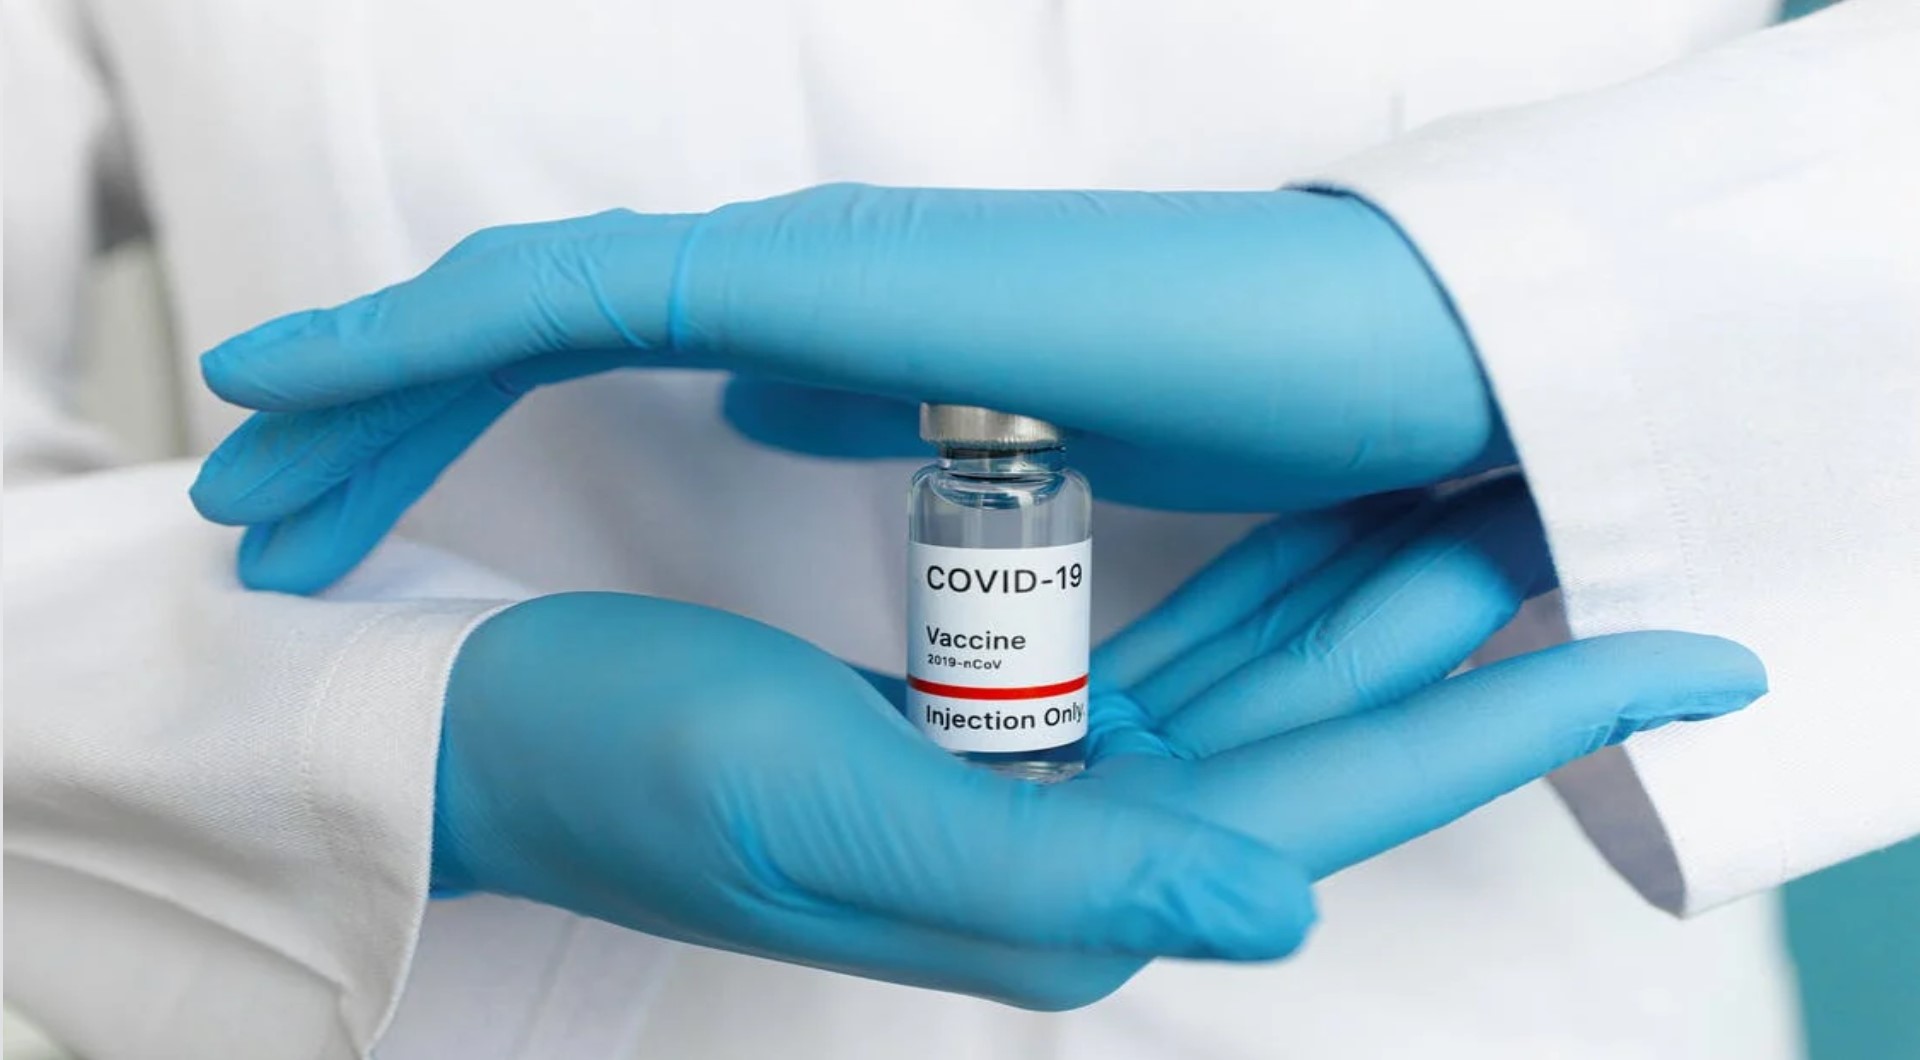 Nessuno può essere obbligato a farsi inoculare i cosiddetti vaccini anti Covid-19, lo attestano la Costituzione, le leggi e le sentenze